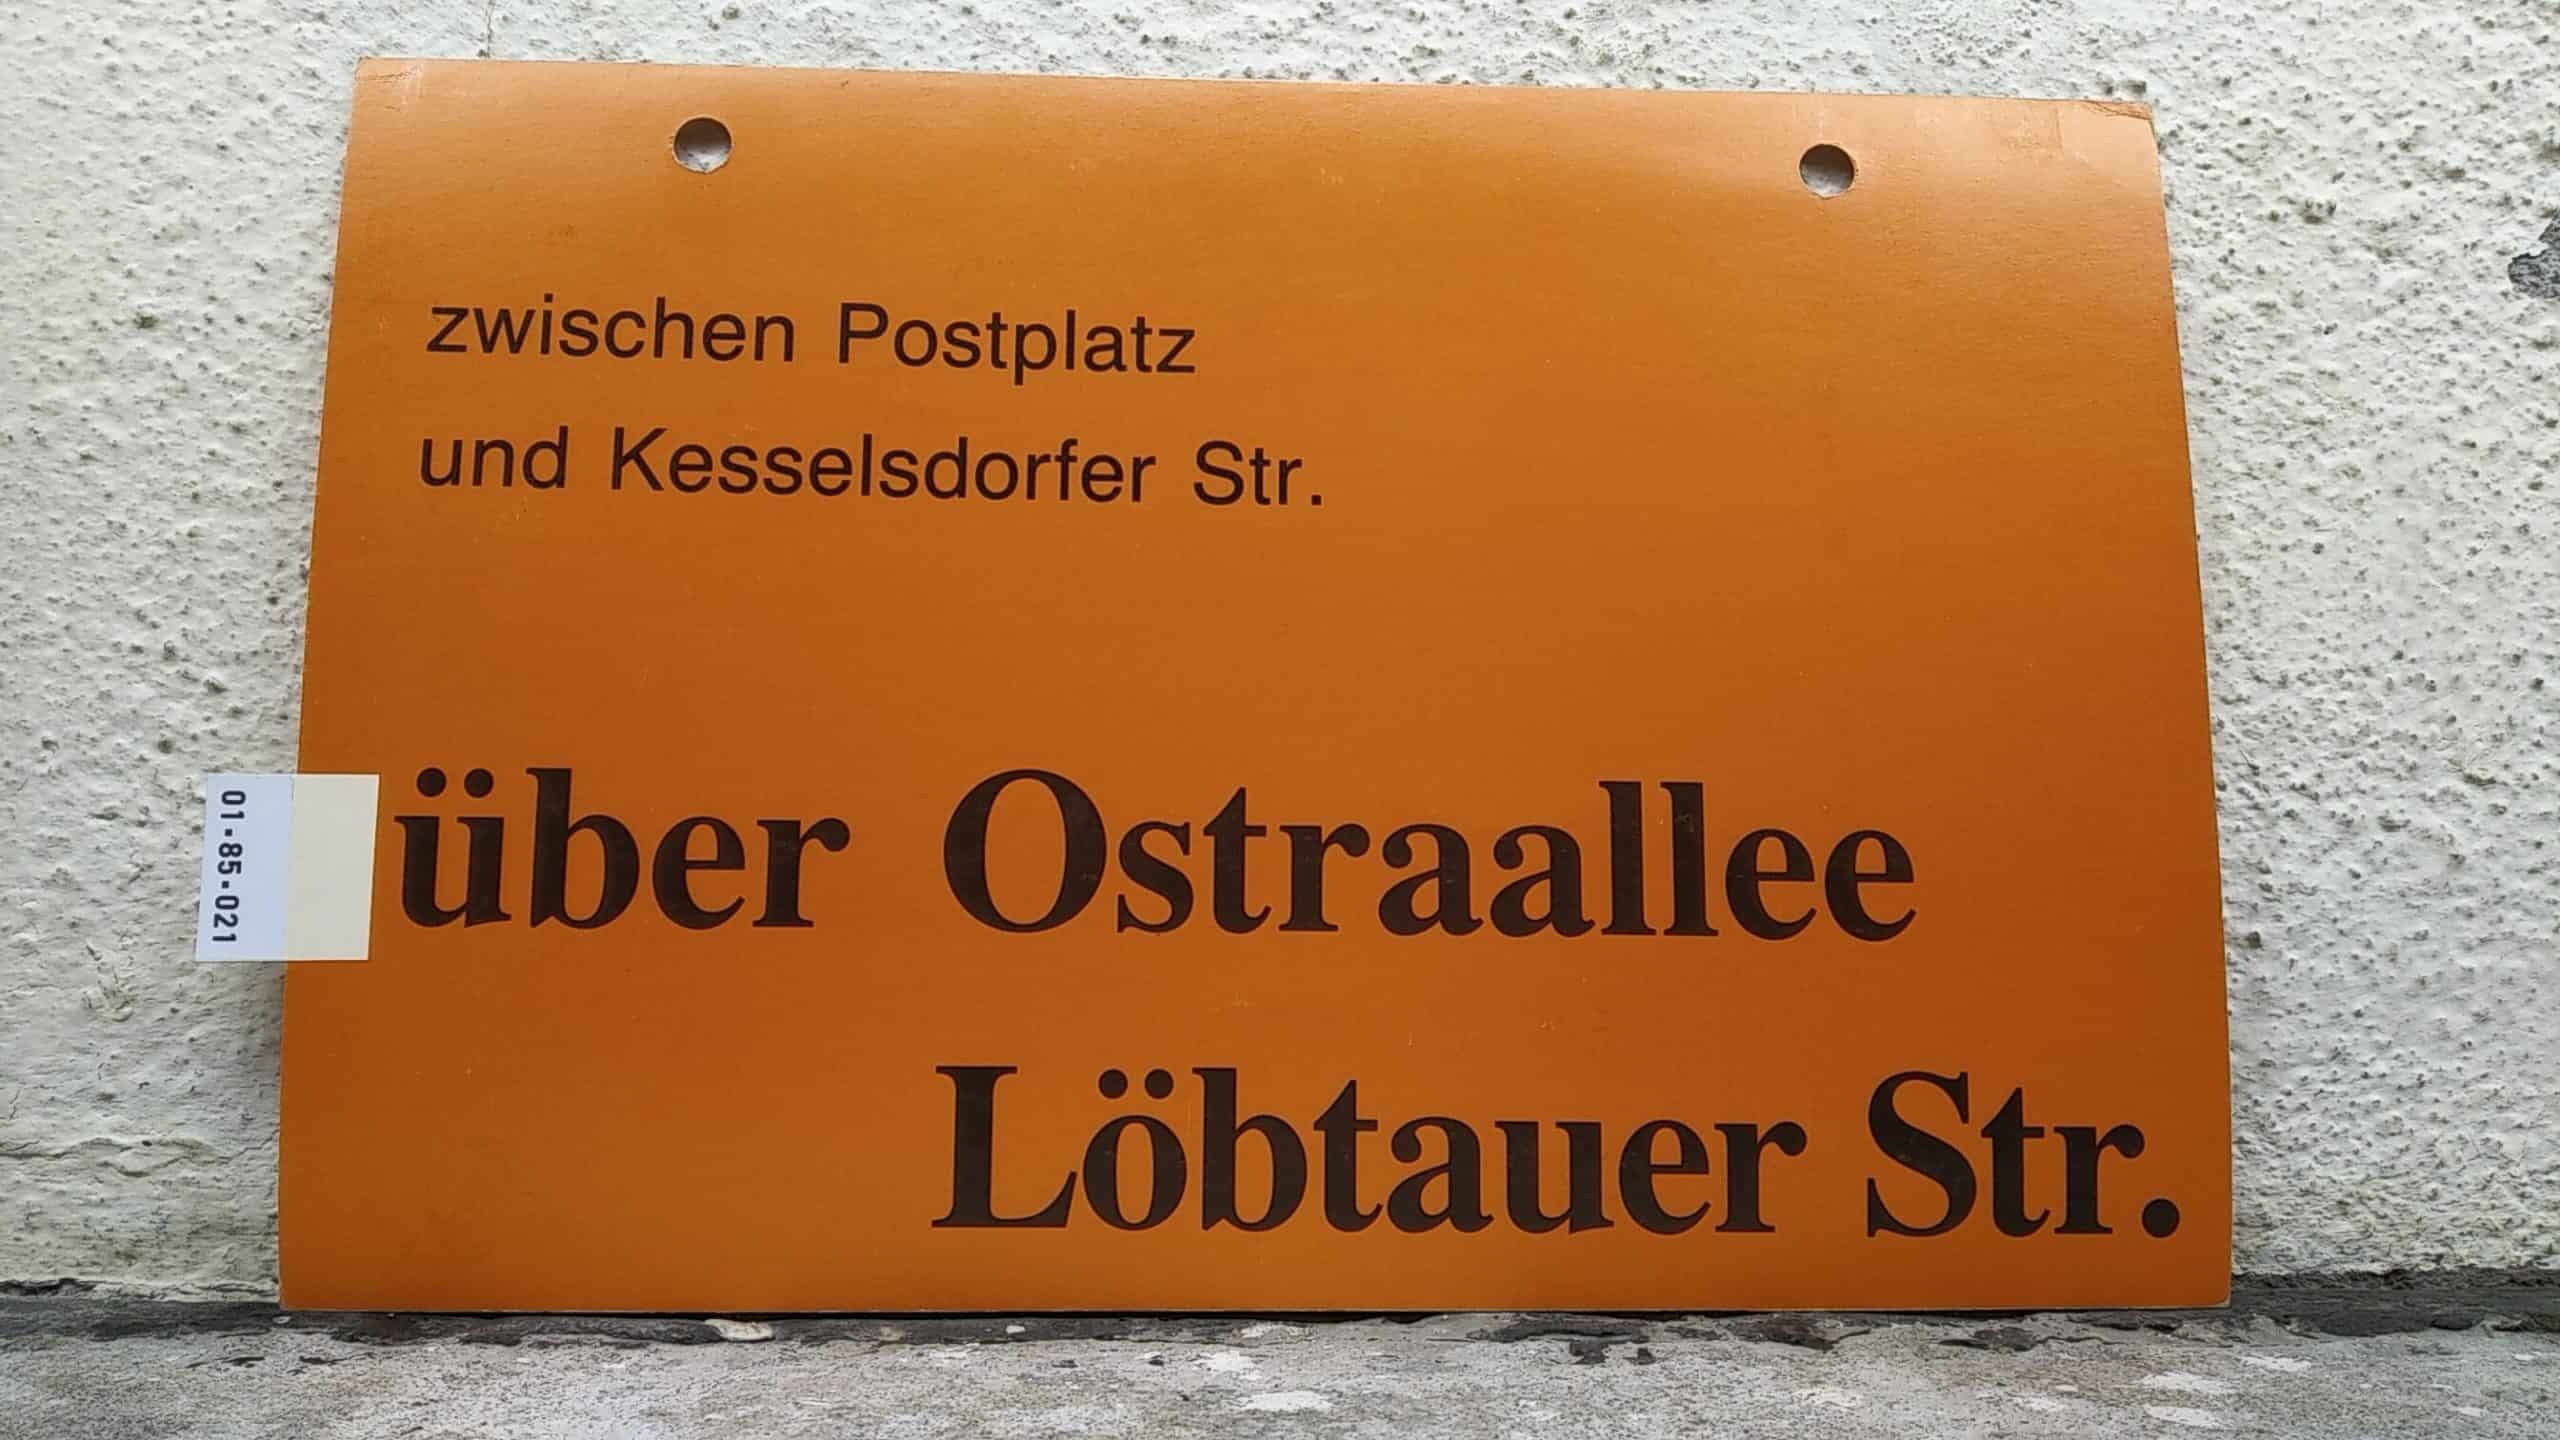 Ein seltenes Straßenbahn-Umleitungsschild aus Dresden: zwischen Postplatz und Kesselsdorfer Str. über Ostraallee Löbtauer Str.